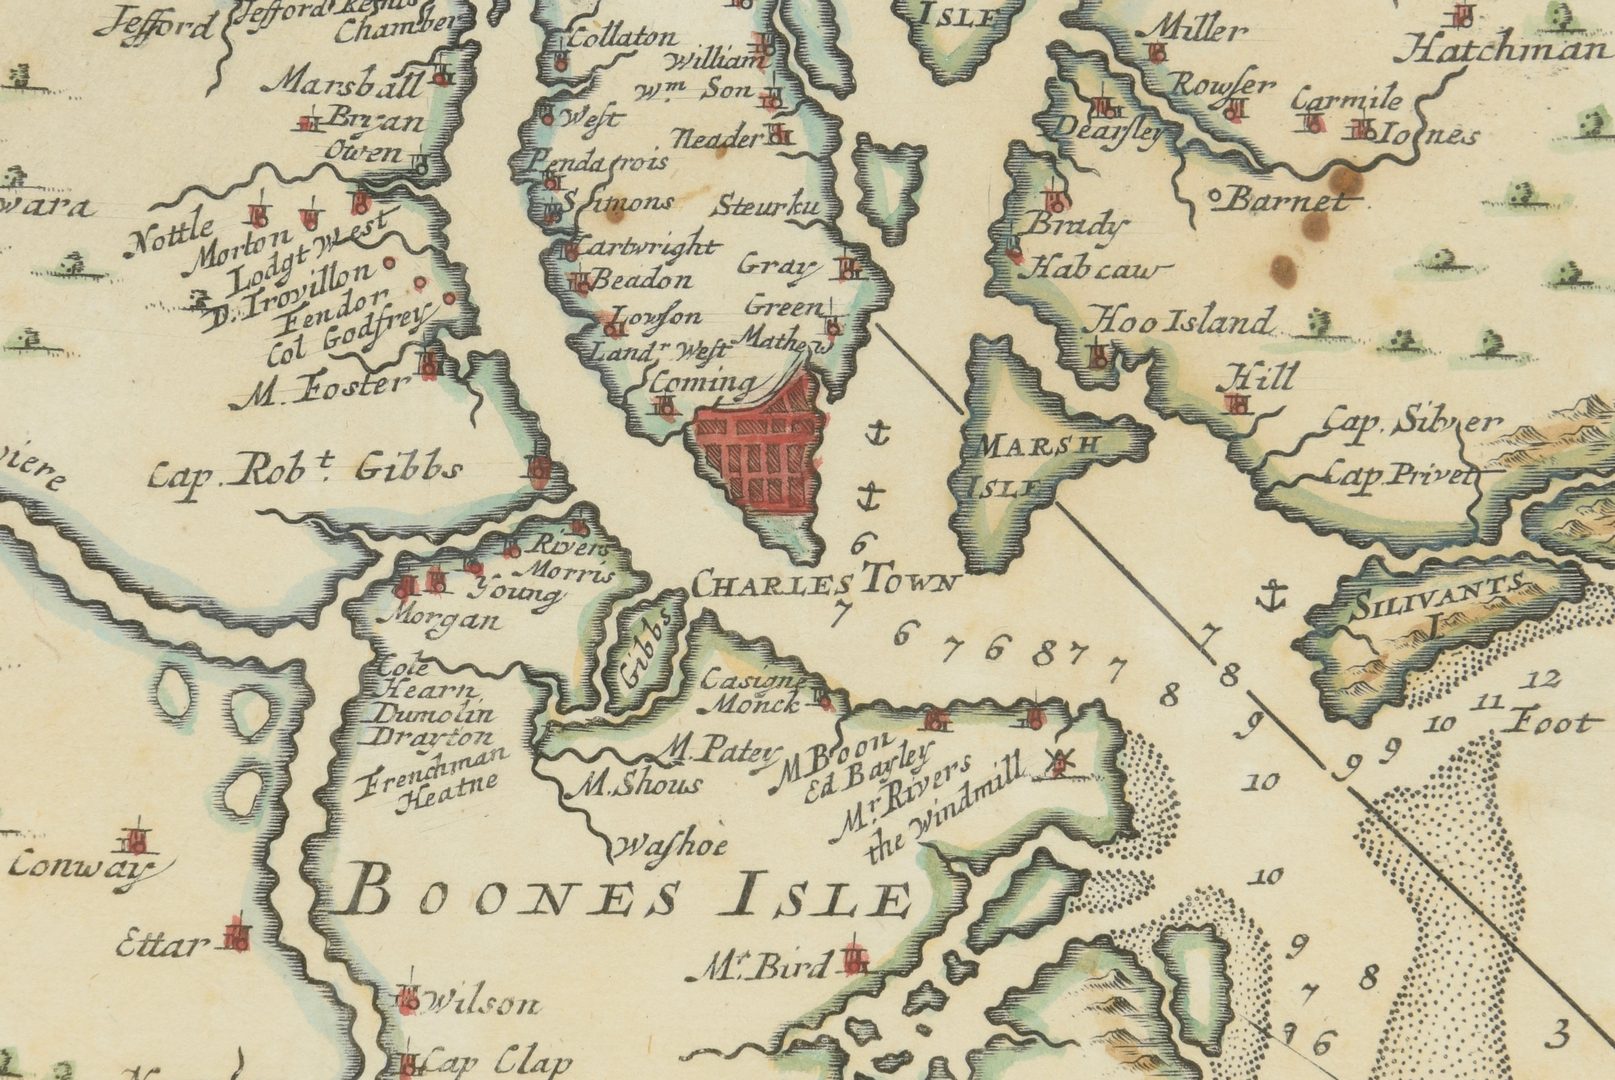 Lot 265: Important Early South Carolina Map 1696